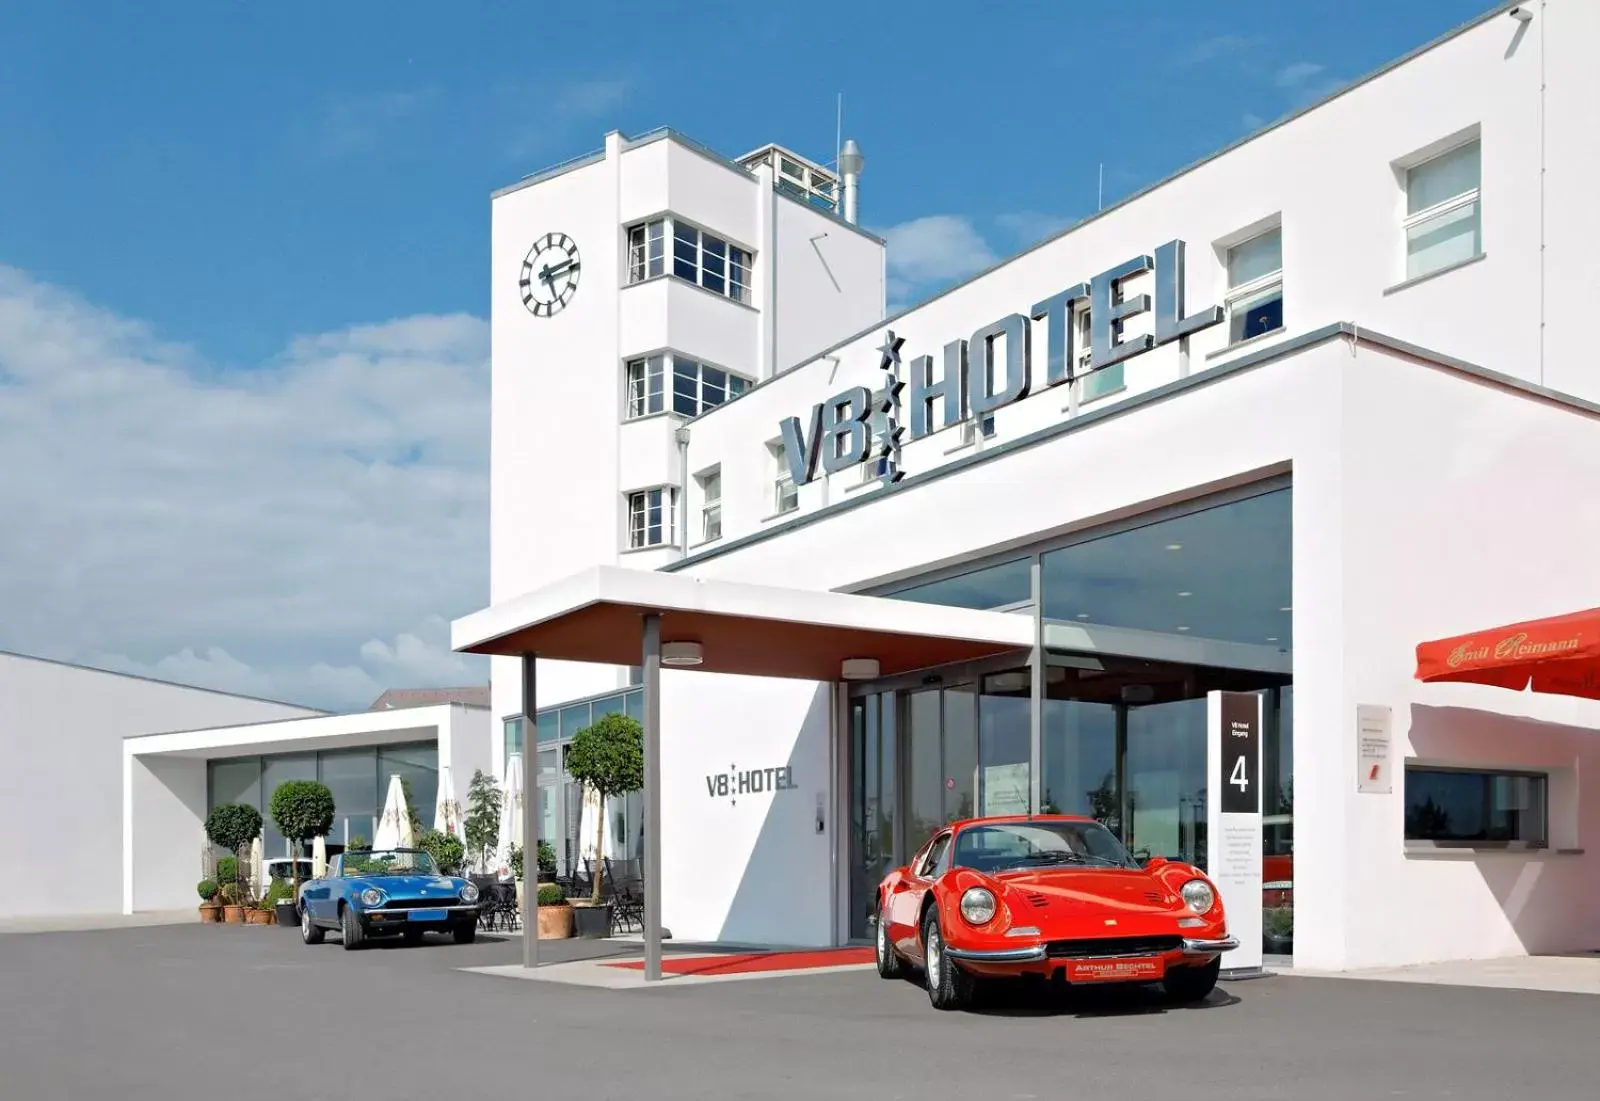 Facade/entrance in V8 HOTEL Classic Motorworld Region Stuttgart